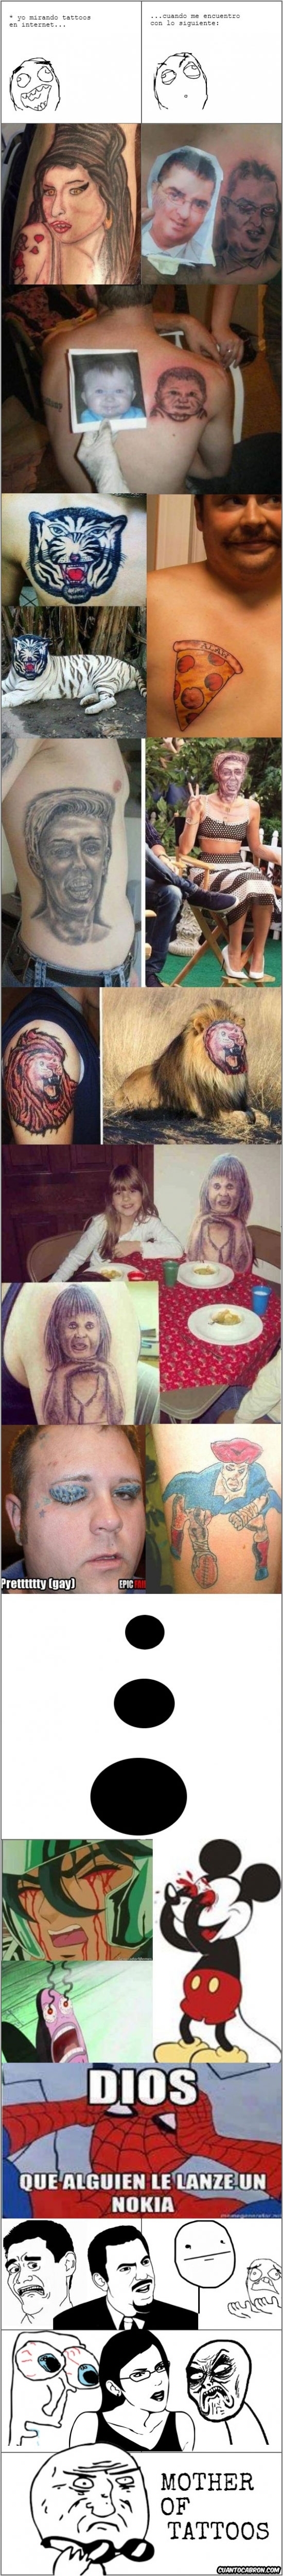 Mother_of_god - Probablemente los peores tatuajes que hayas visto en tu vida, ¡menudo despropósito!